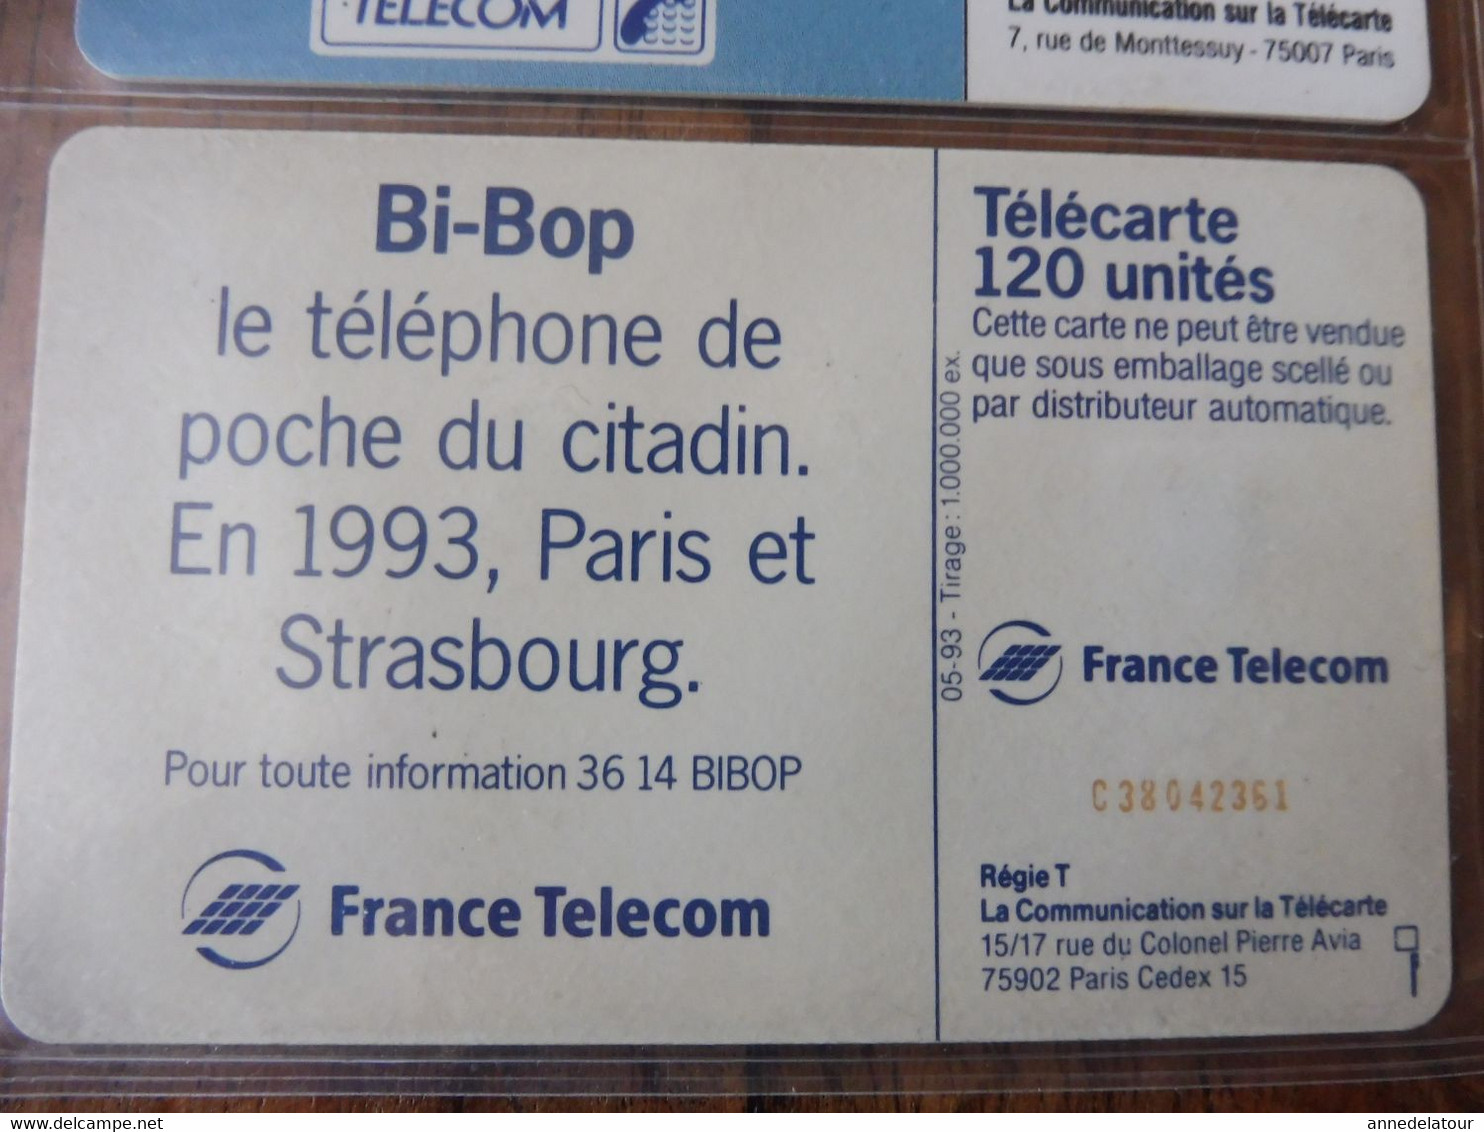 10  Télécartes  FRANCE TELECOM    publicités et divers, Anniversaire Débarquement 1944, etc